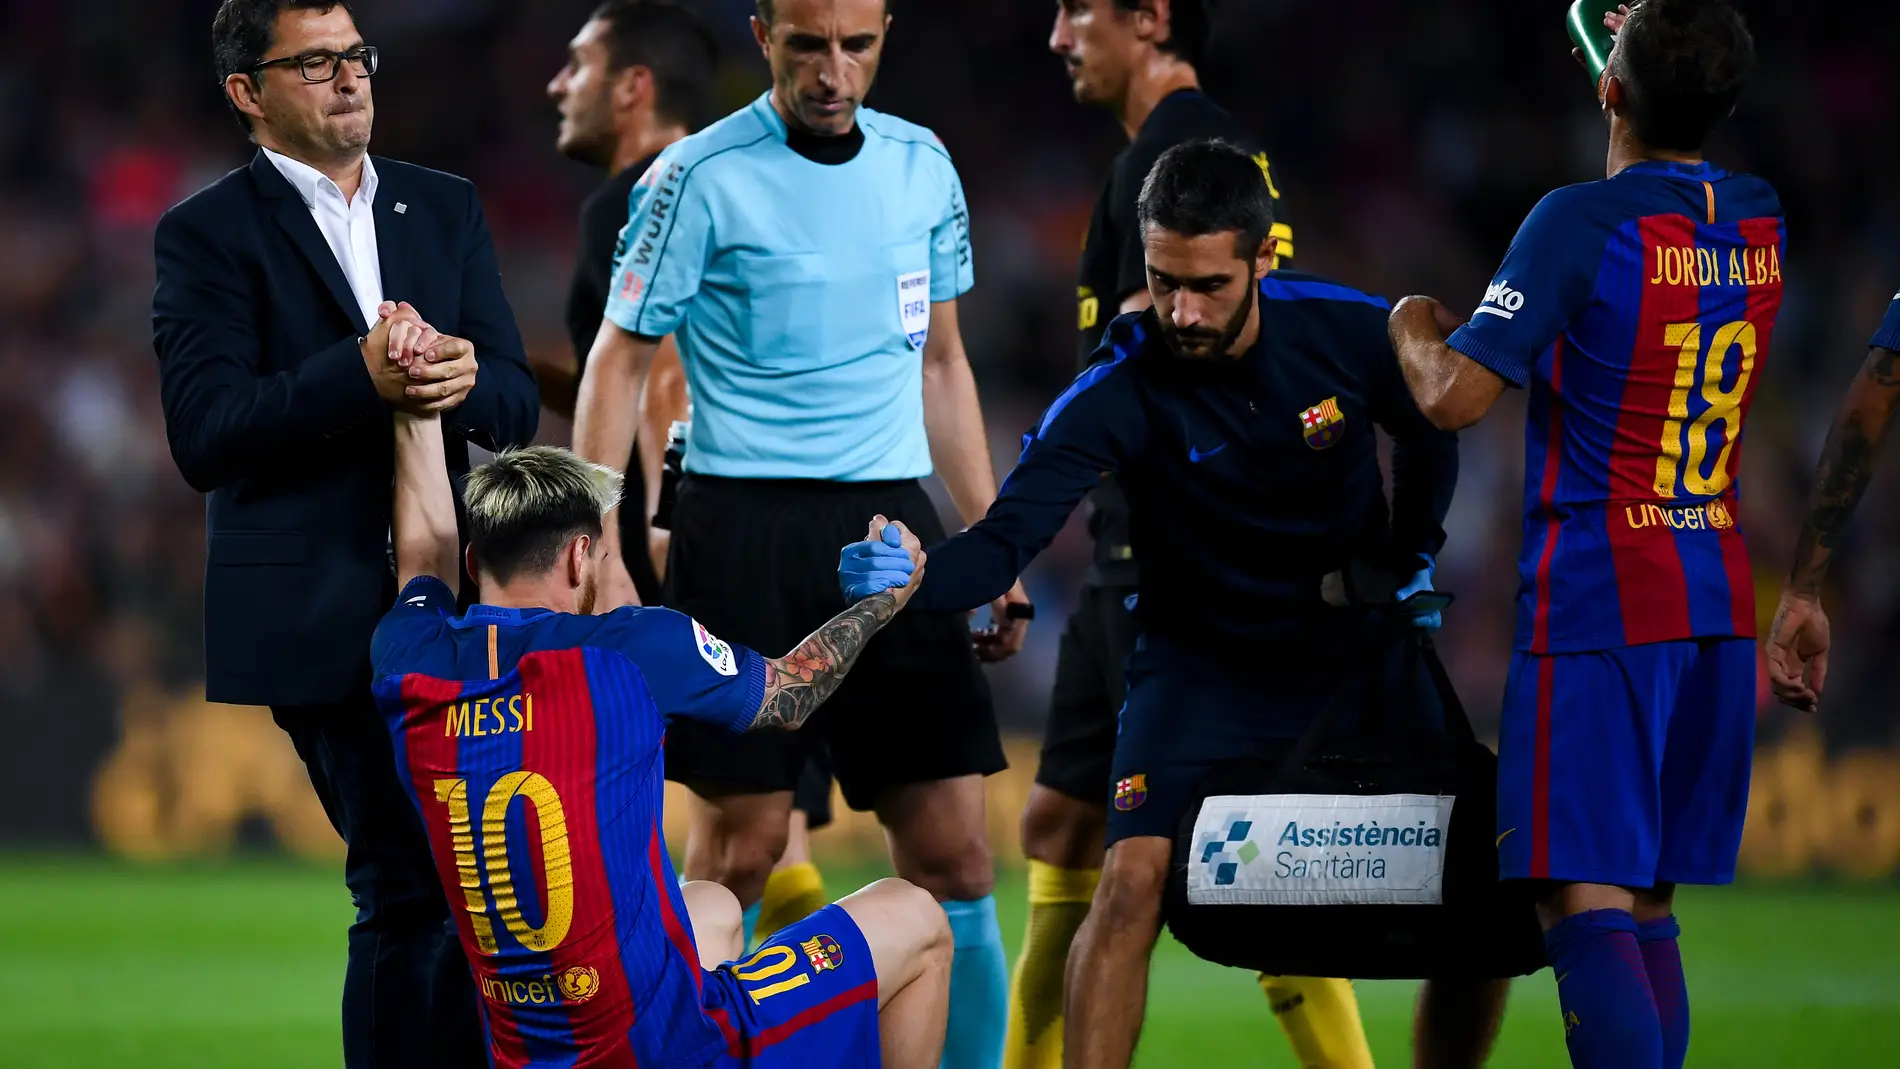 Messi, lesionado en el partido ante el Atlético